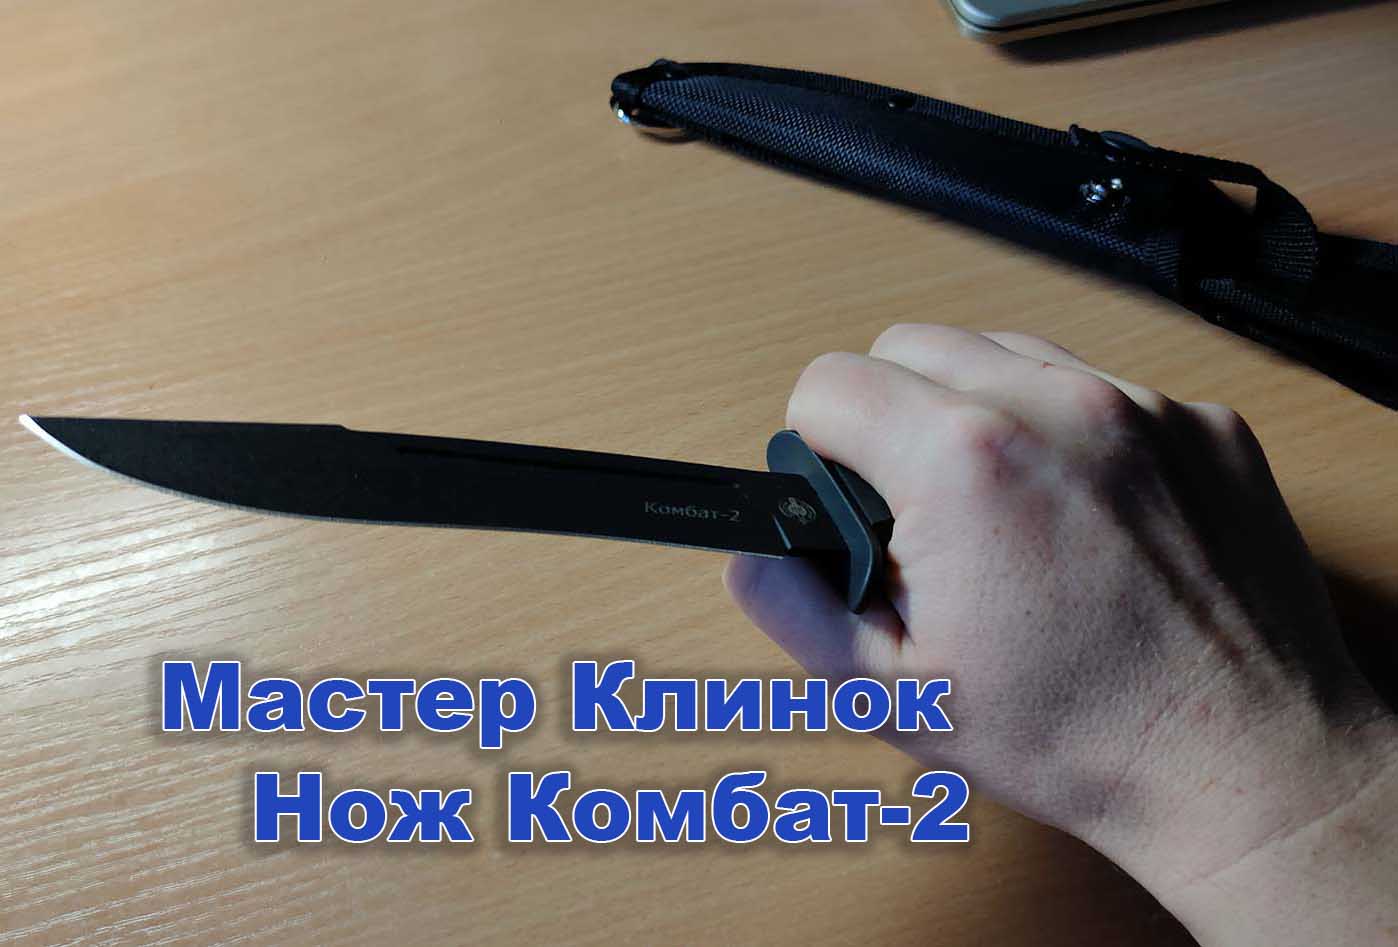 Нож Комбат-2 как лежит в руке